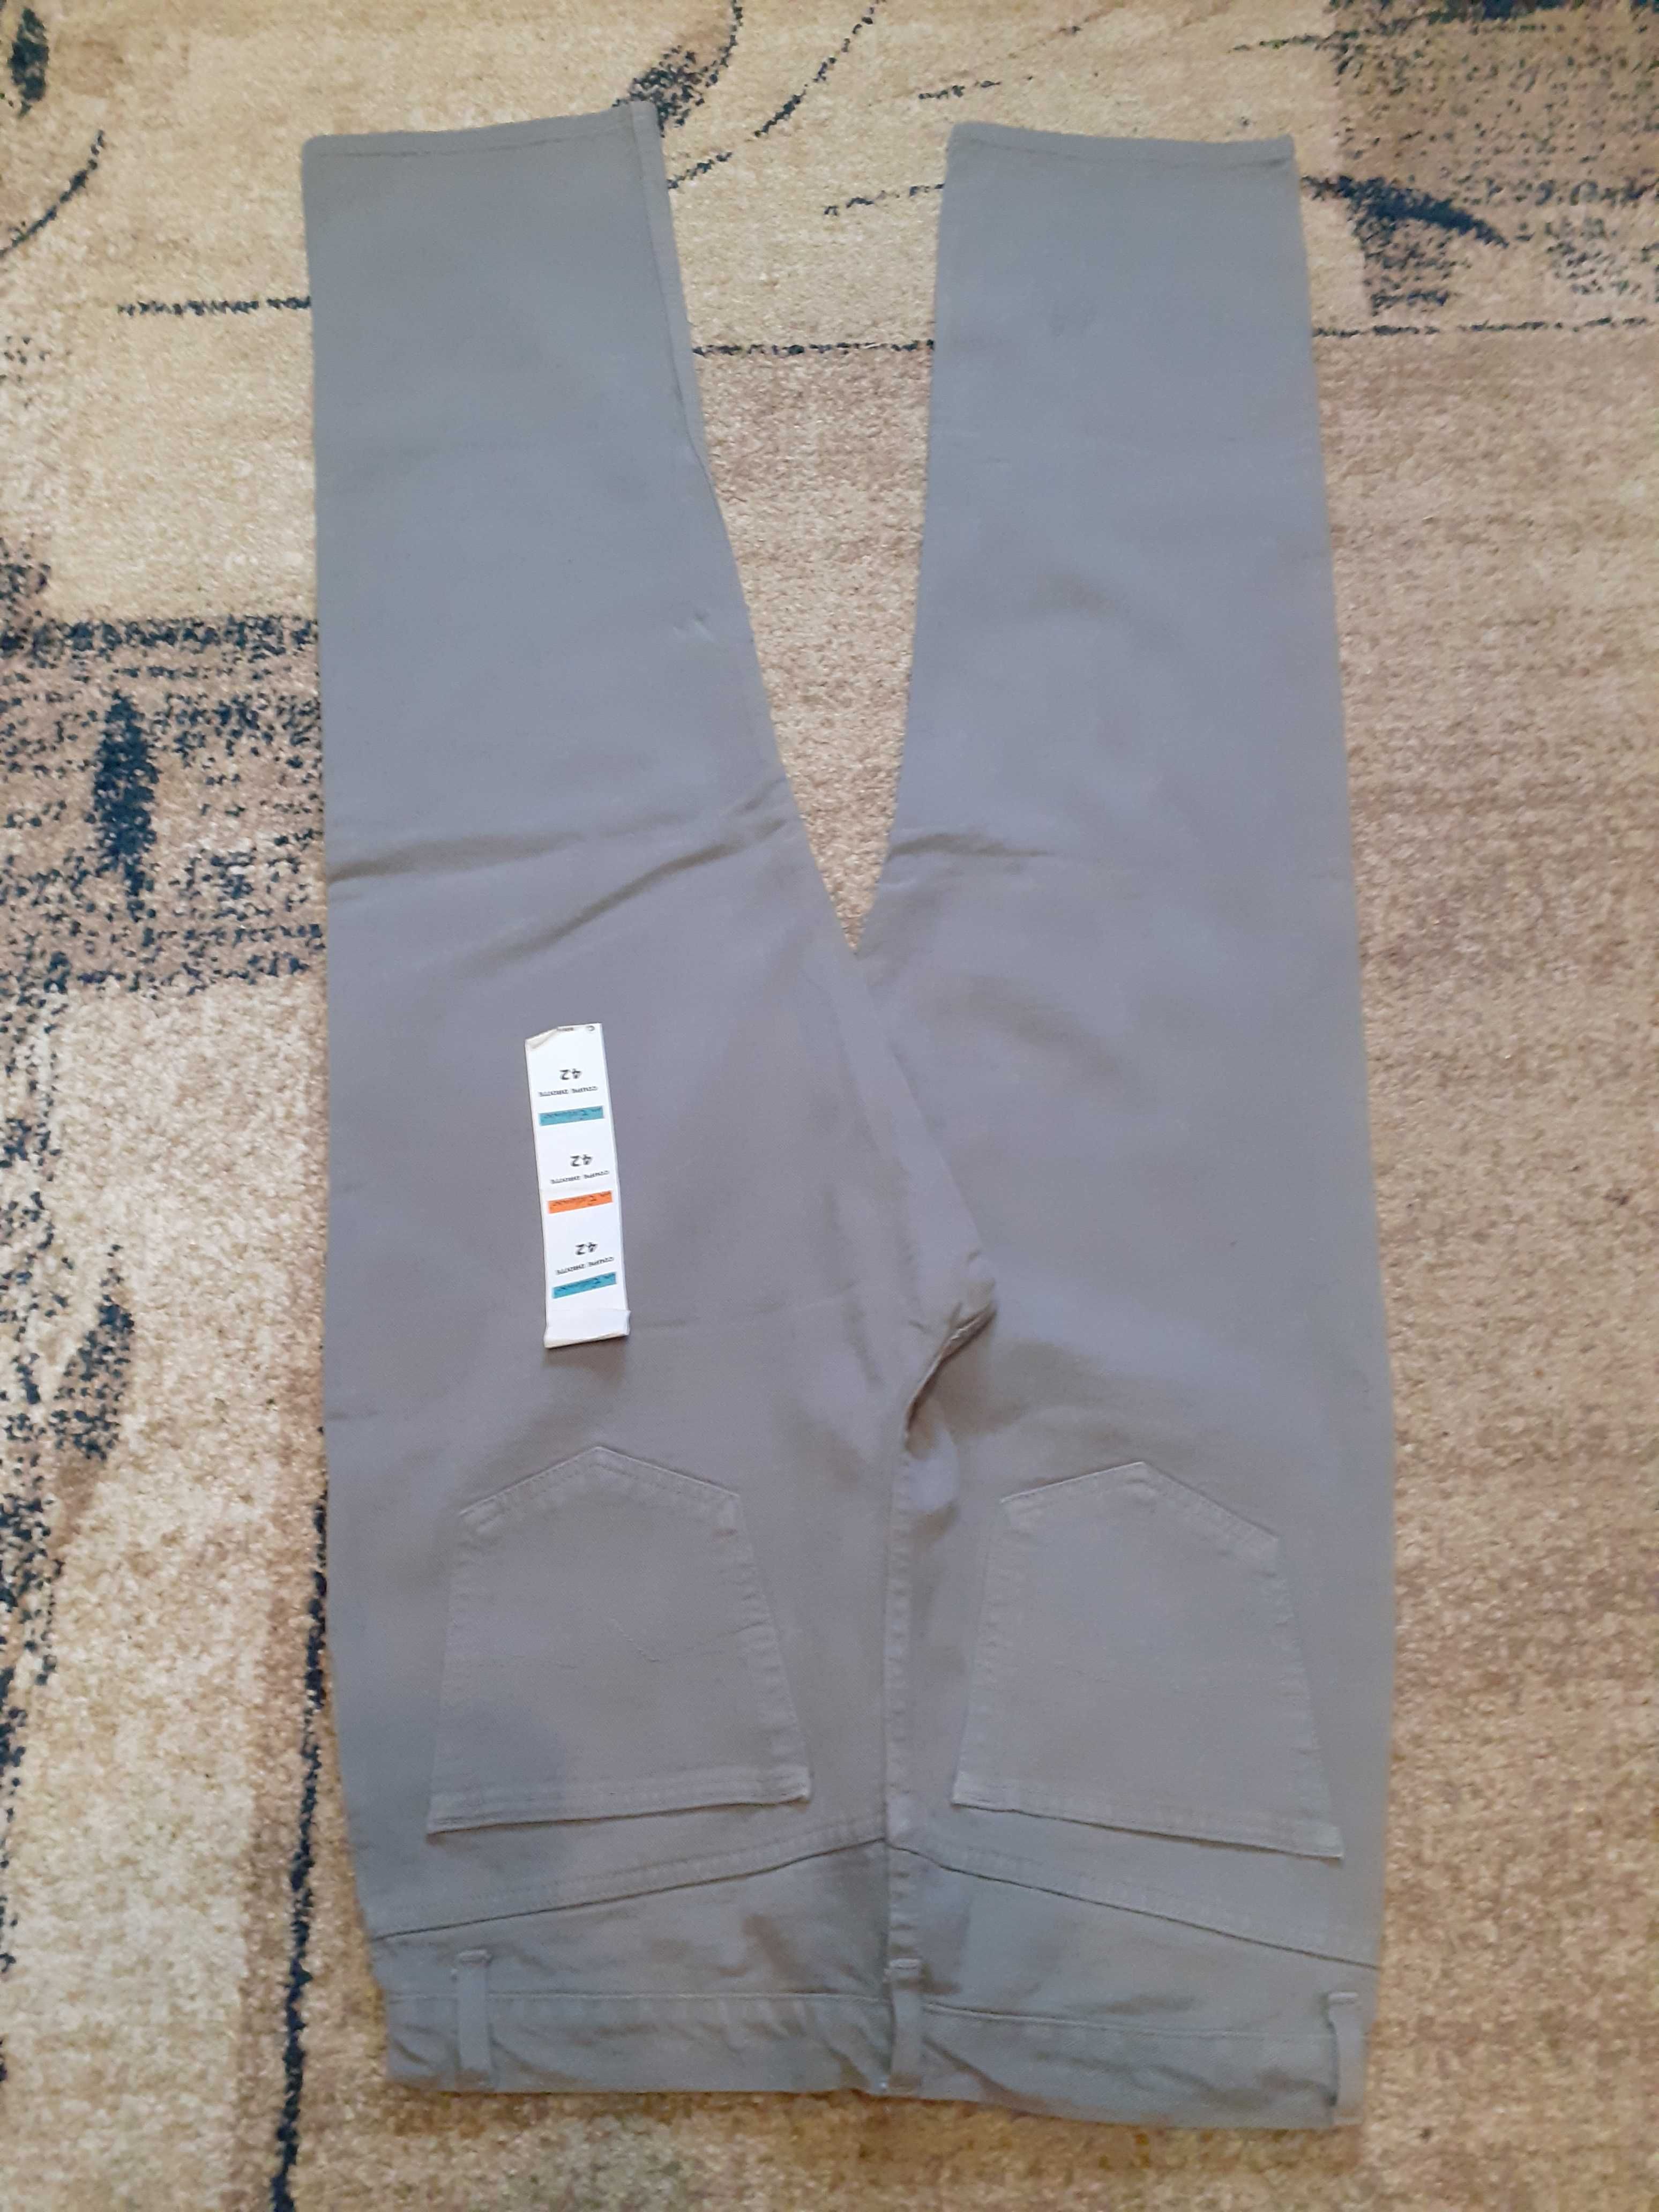 NOWE spodnie jensowe męskie (ROZMIAR 33) (SZARE)